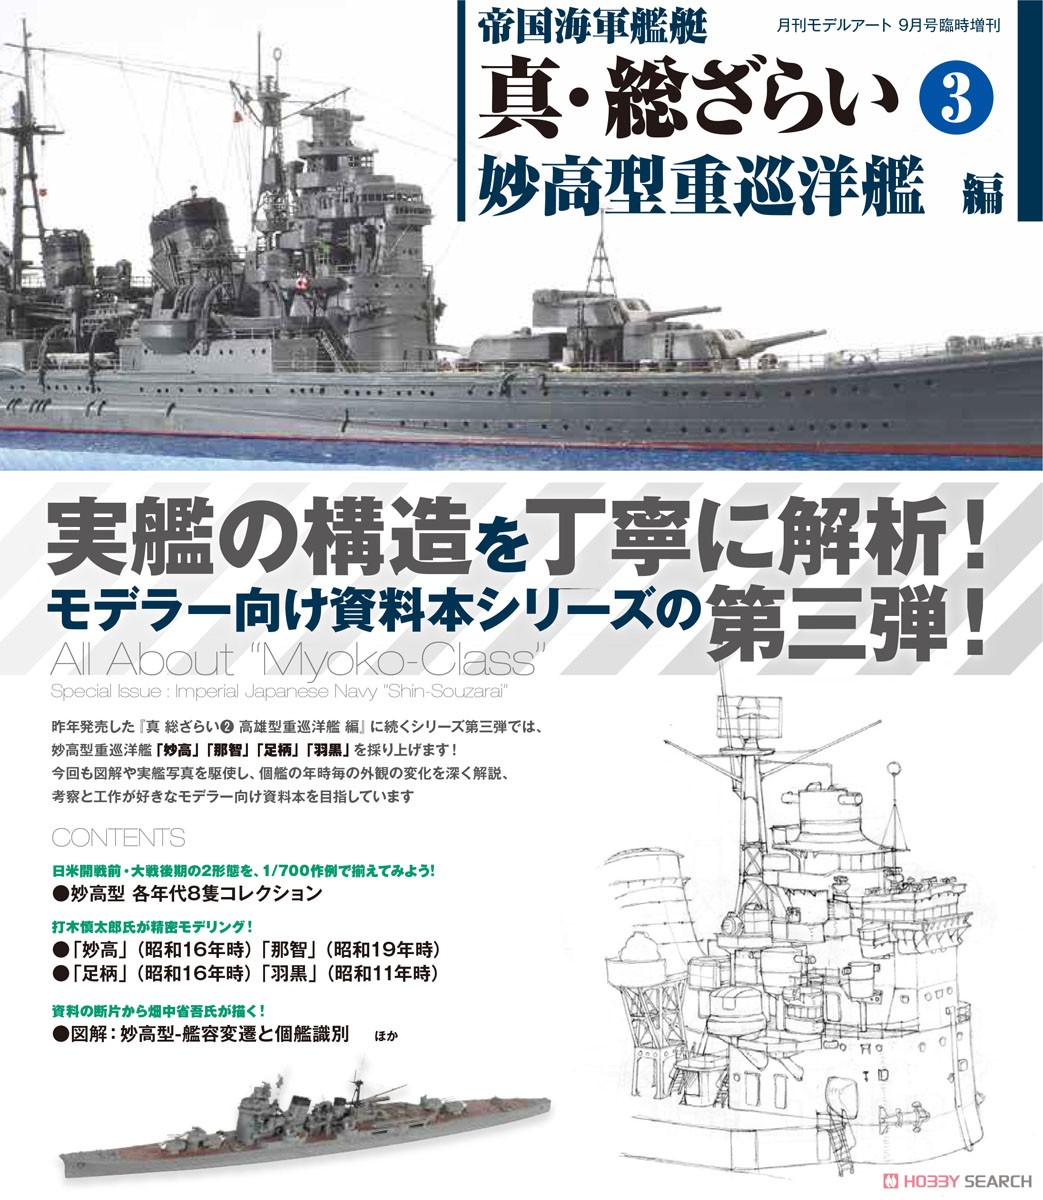 帝国海軍艦艇 真・総ざらい3 妙高型重巡洋艦編 (書籍) その他の画像1